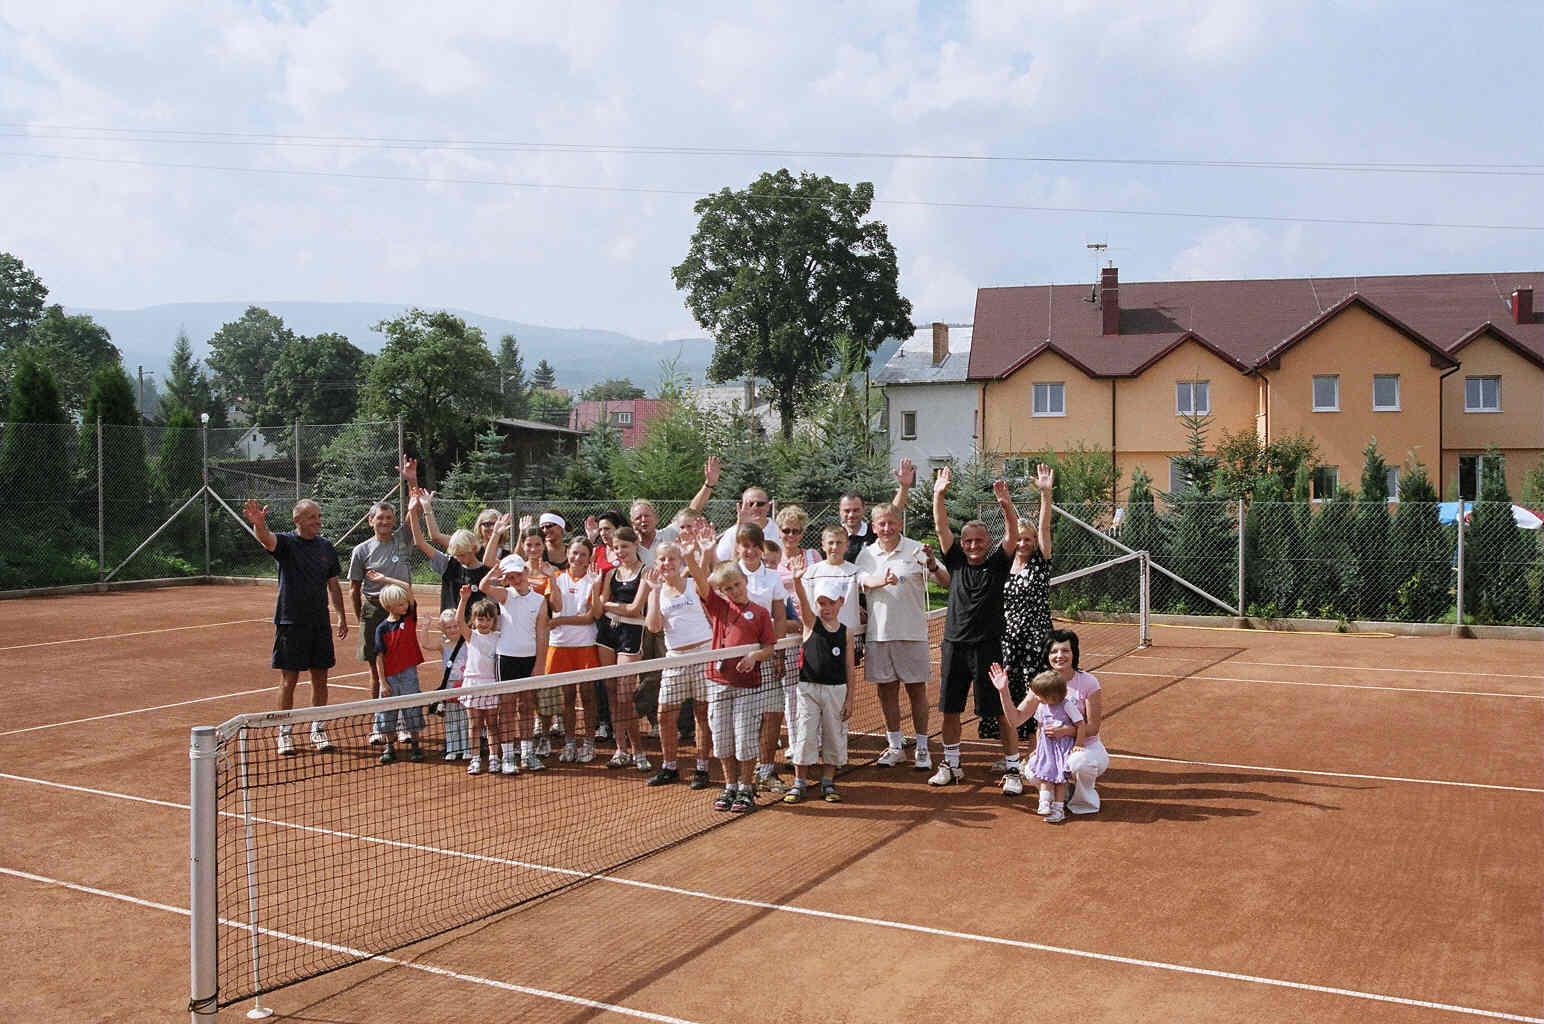 Ośrodek tenisowy - Family Tennis Camp, Karpacz, dolnośląskie